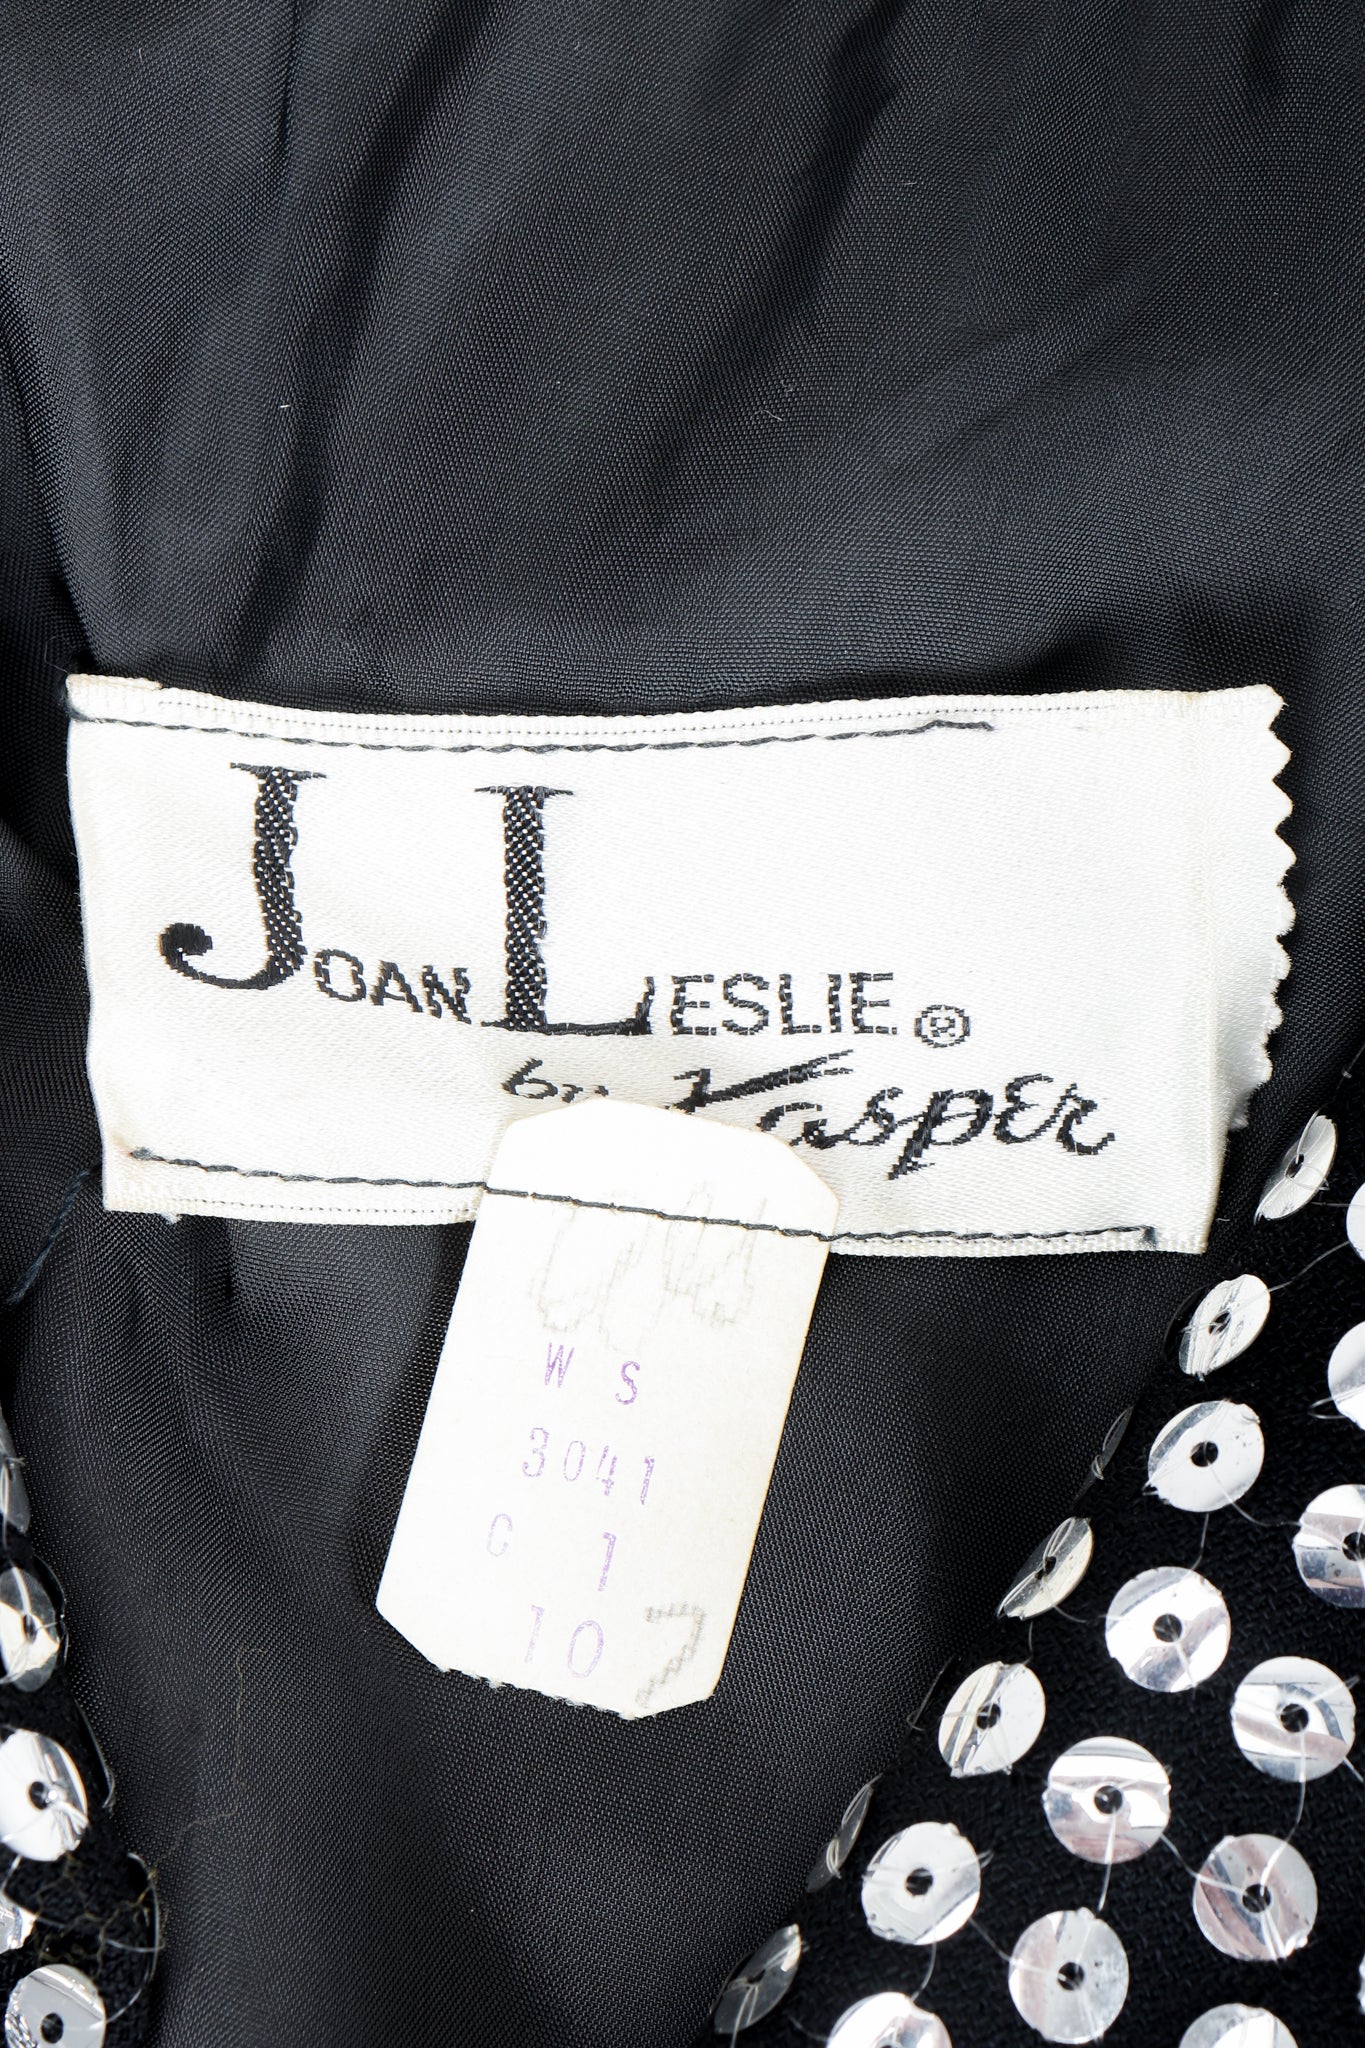 Vintage Joan Leslie by Kasper label on black